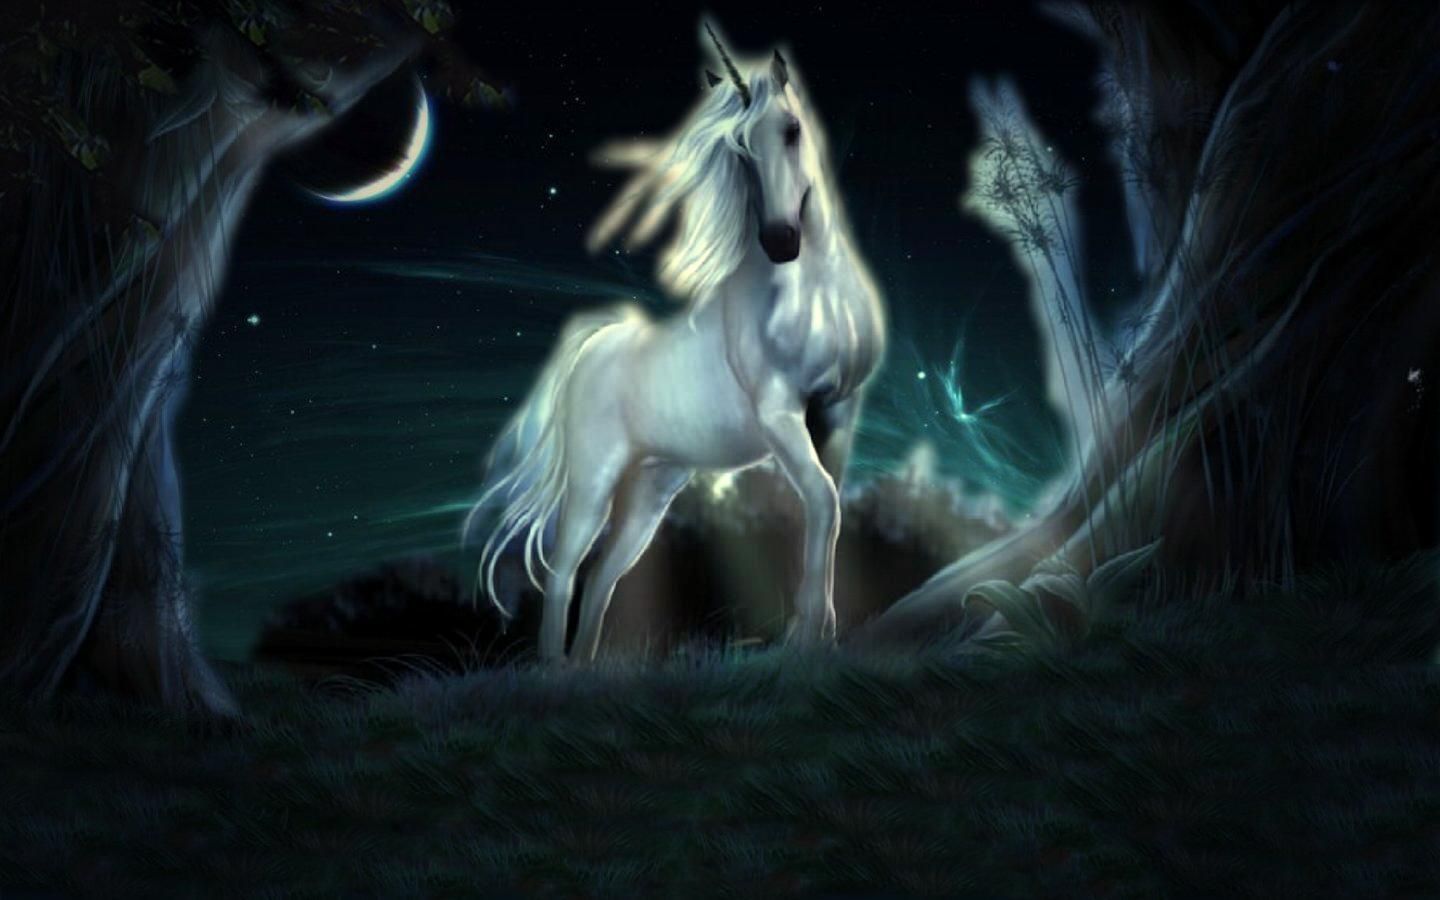 Unicorn puter wallpapers desktop backgrounds x id mythical creatures unicorn wallpaper unicorn pictures